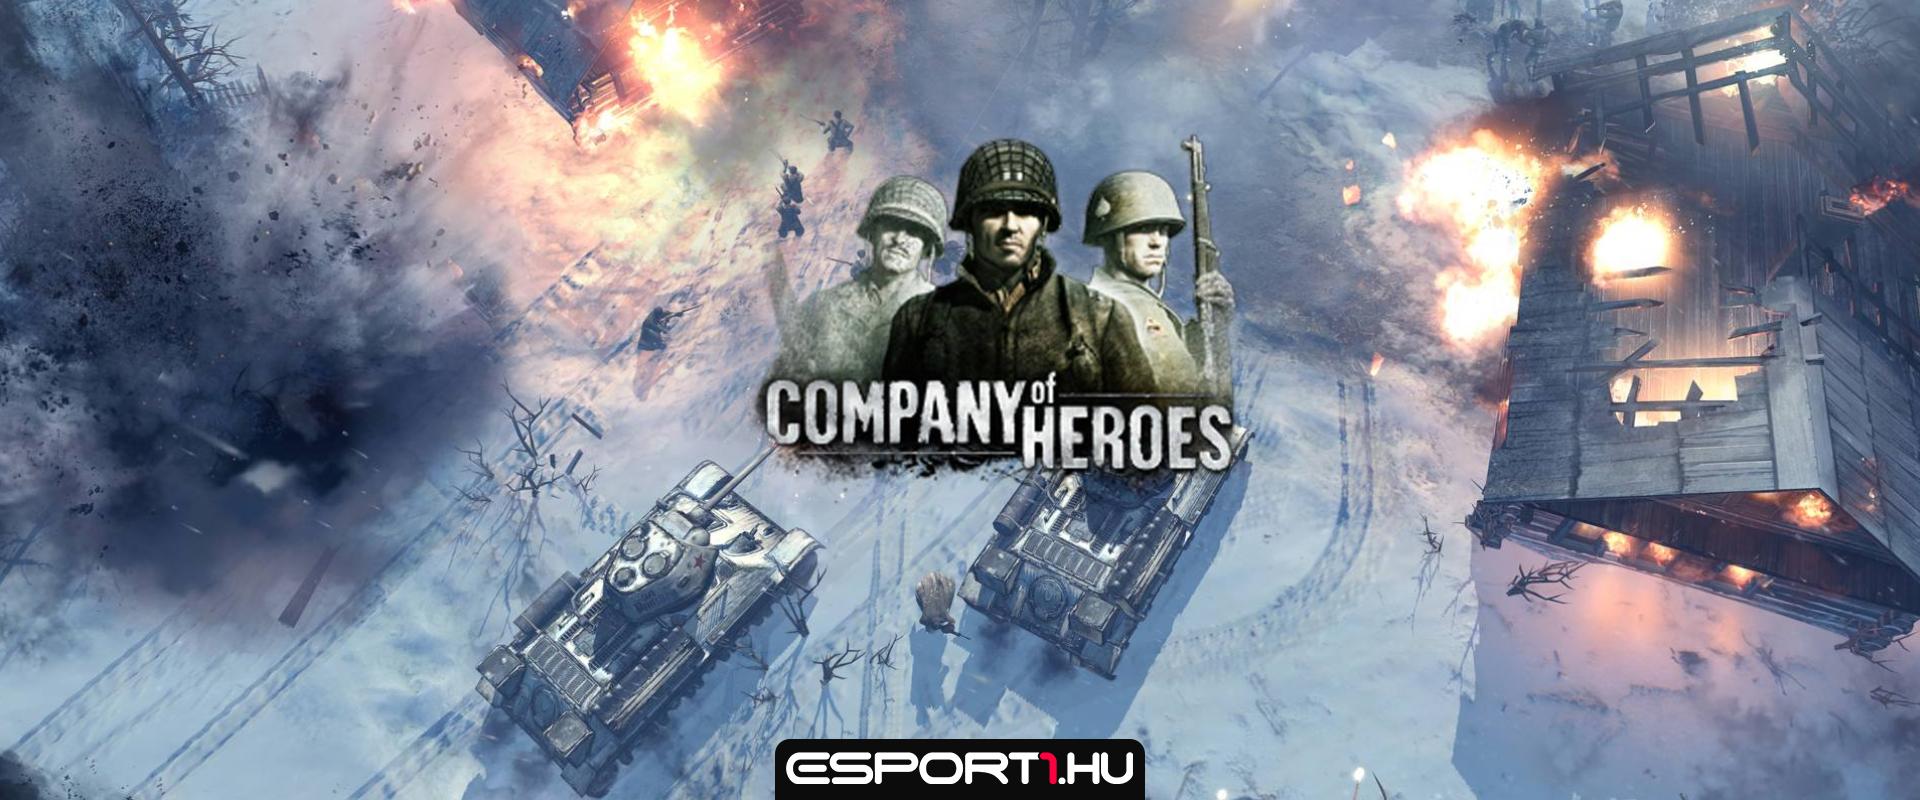 Társasjátékot kapott a Company of Heroes